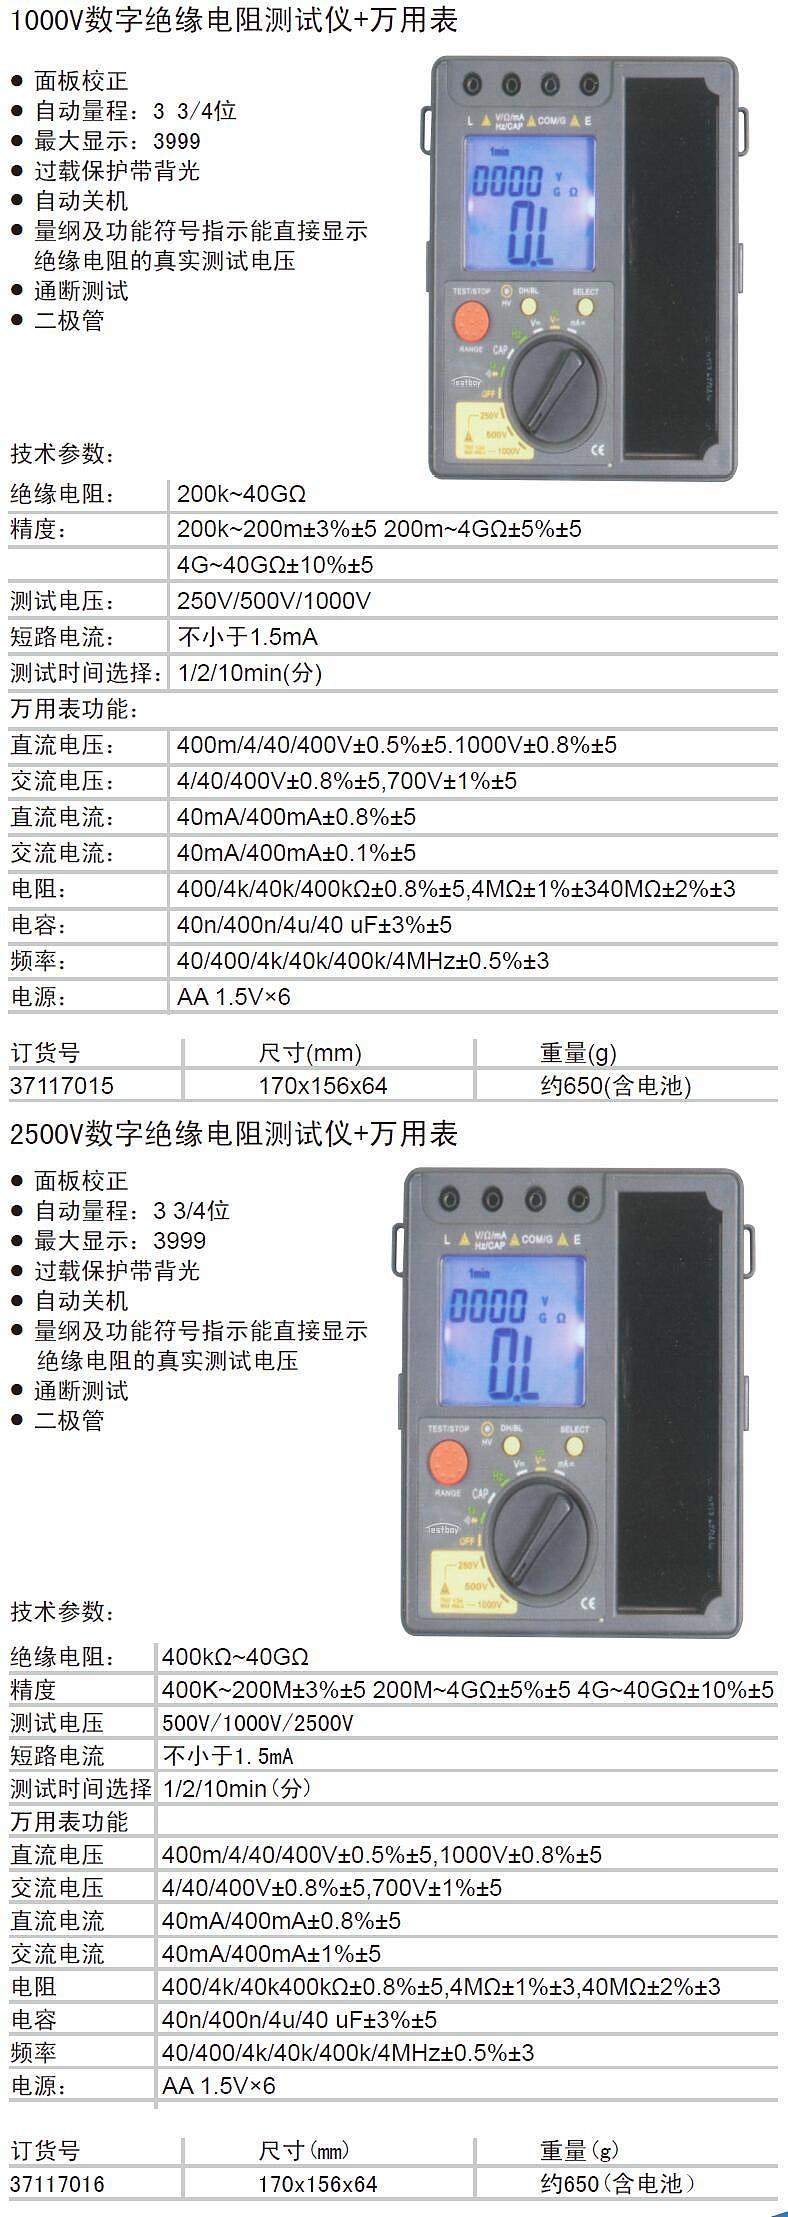 TESTBOY 2500V数字绝缘电阻测试仪 37117016